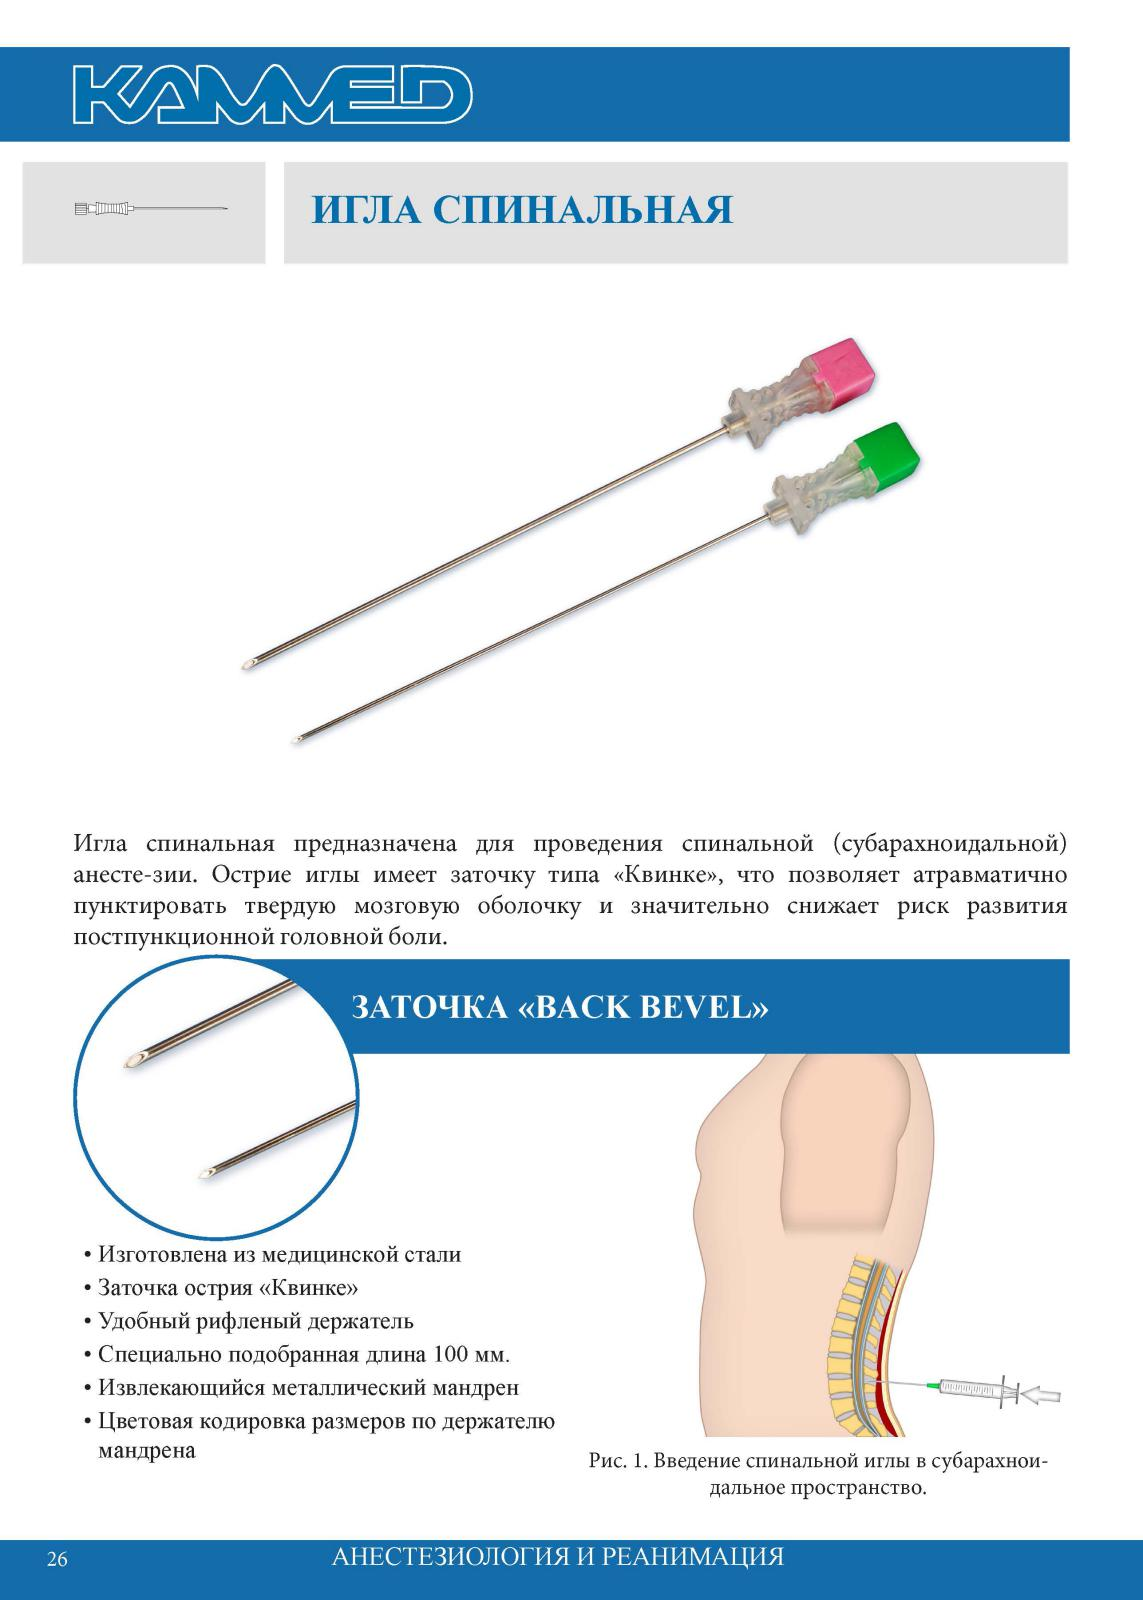 Игла спинальная типы. Игла для спинальной анестезии Spinocan g-22 88 mm. Иглы для спинальной анестезии Размеры. Игла с мандреном для спинномозговой пункции. Заточка спинальных игл.